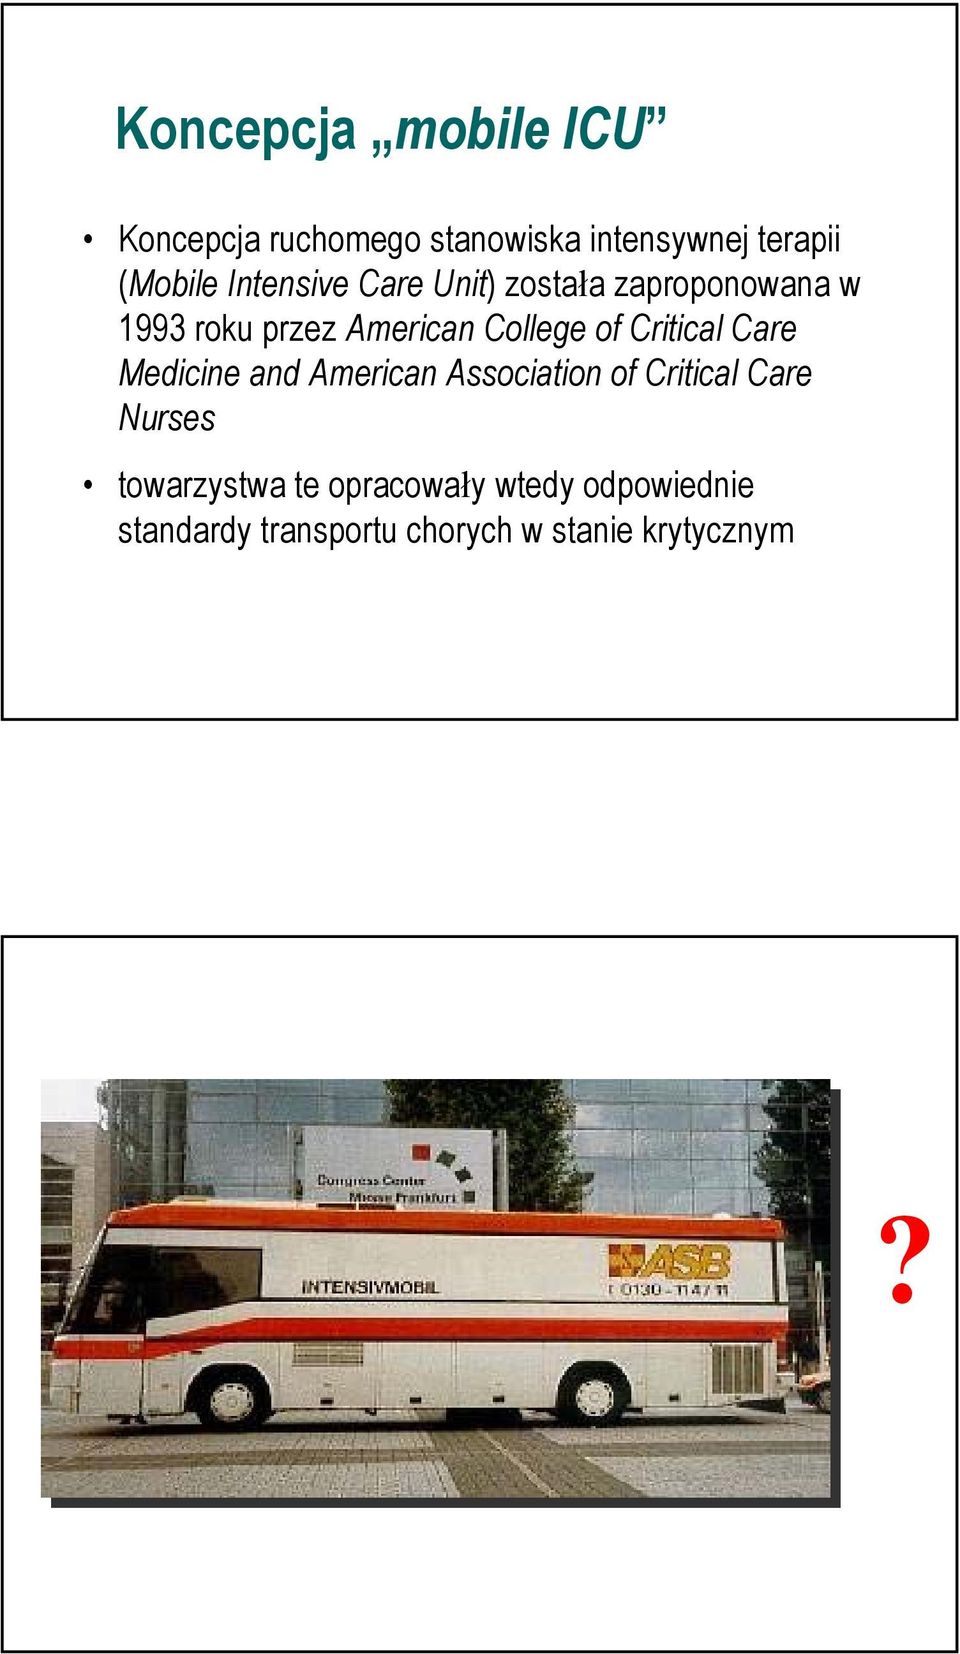 Critical Care Medicine and American Association of Critical Care Nurses